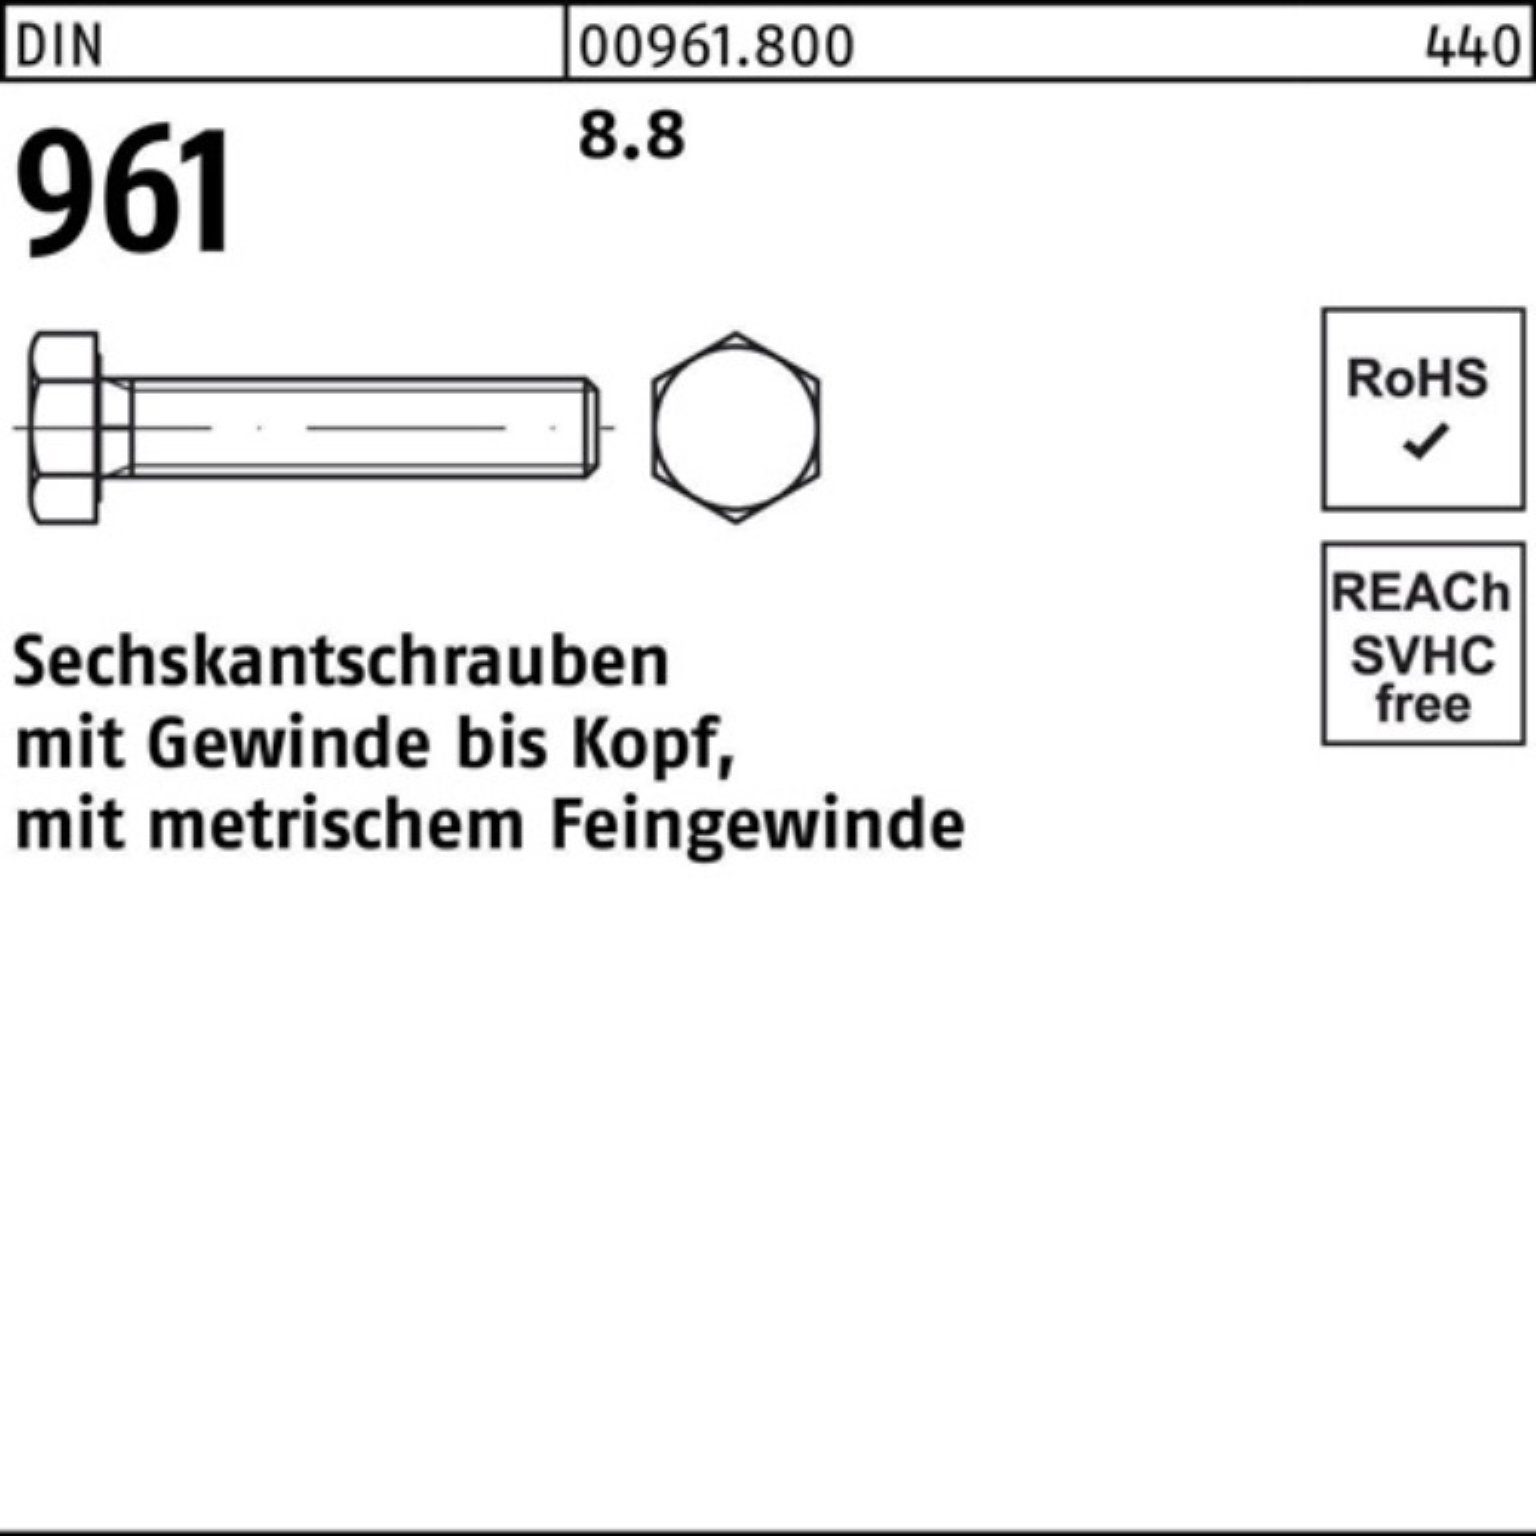 Reyher Sechskantschraube 100er Pack Stück M14x1,5x VG 55 DIN DIN 50 8.8 Sechskantschraube 961